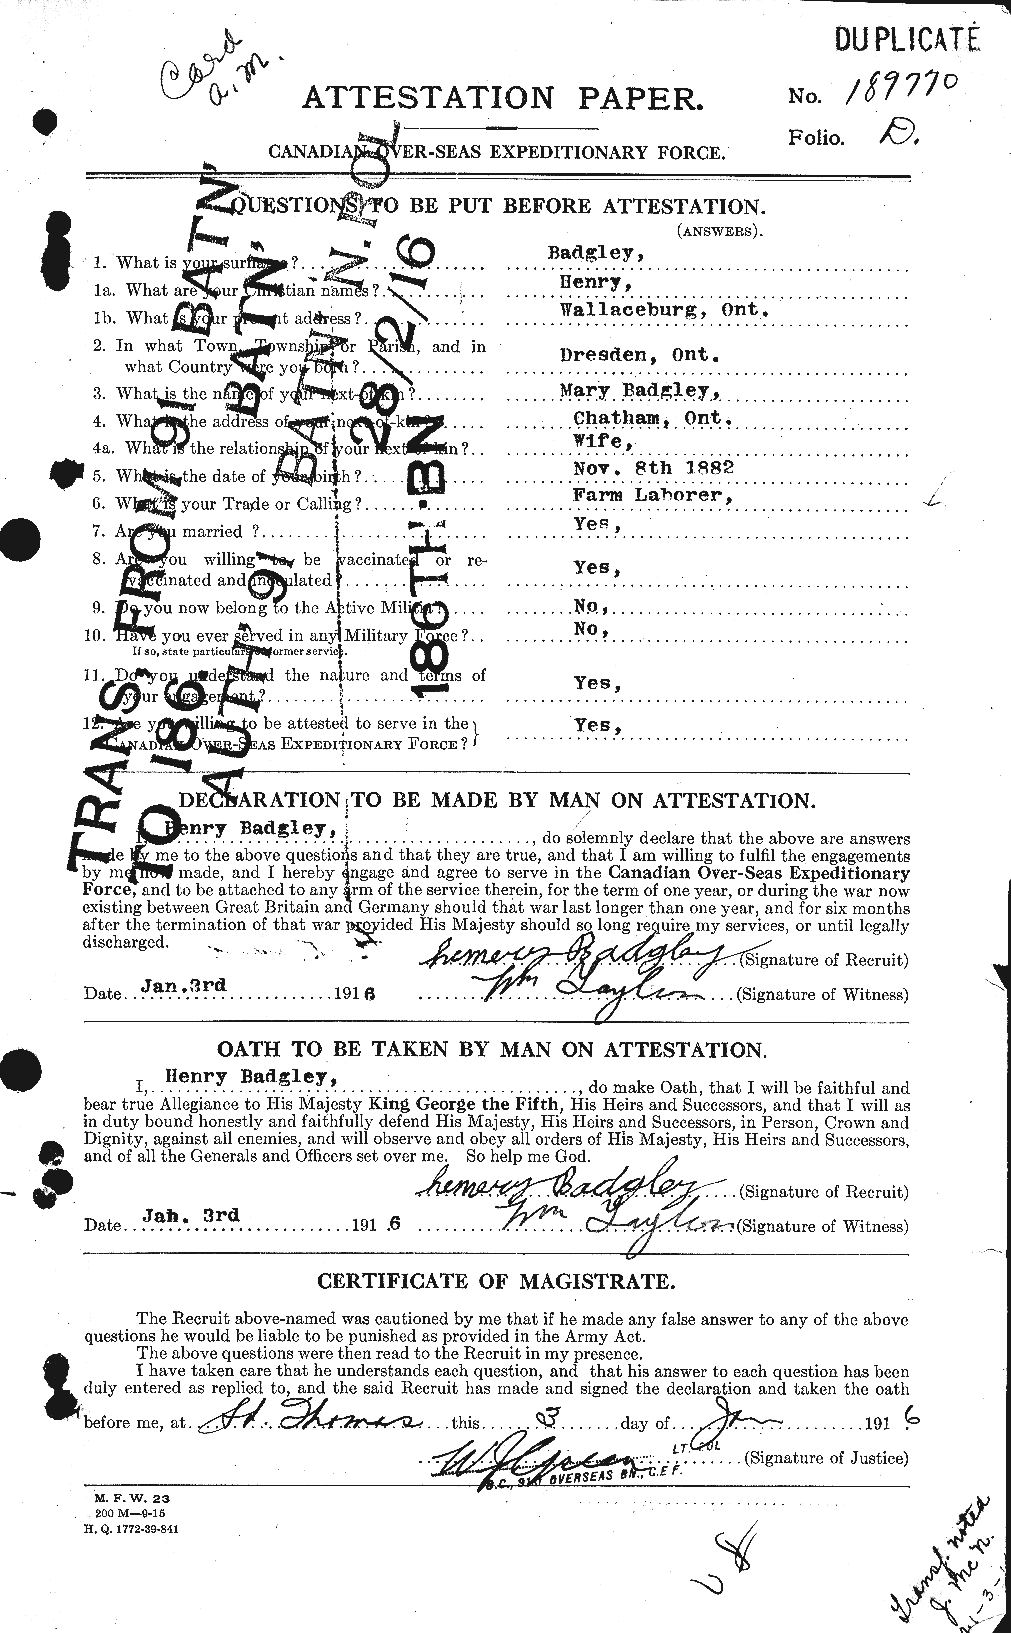 Dossiers du Personnel de la Première Guerre mondiale - CEC 217726a